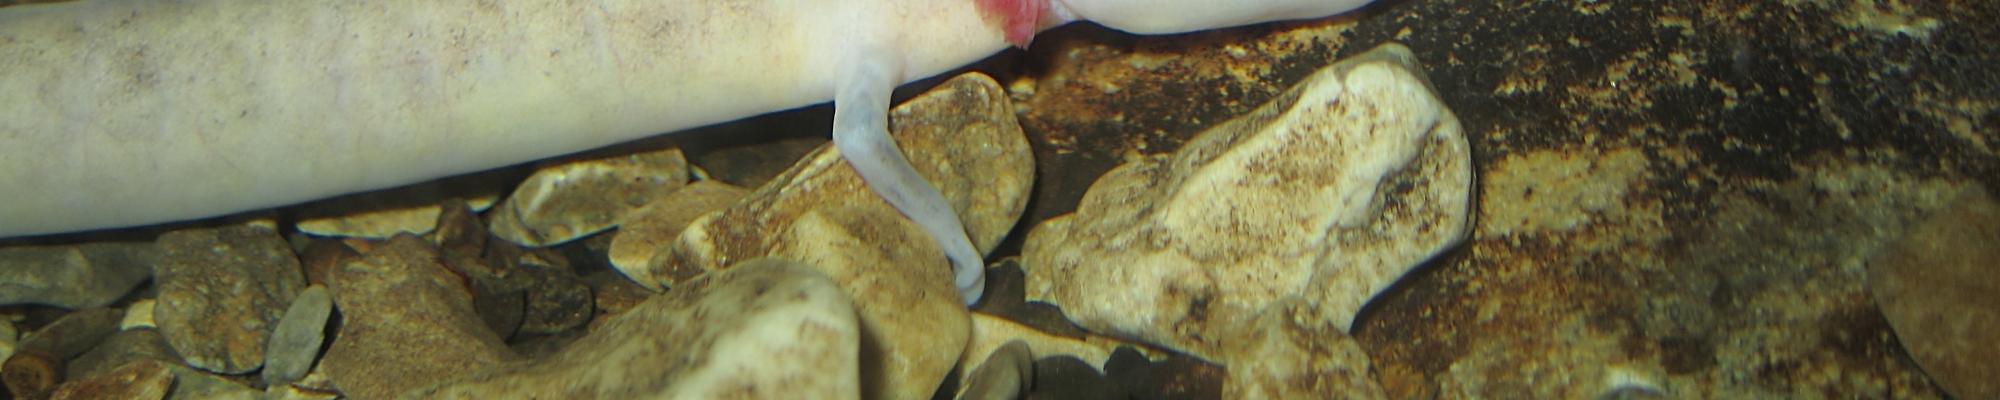 nudibranco imagem de foto de capa de portefólio